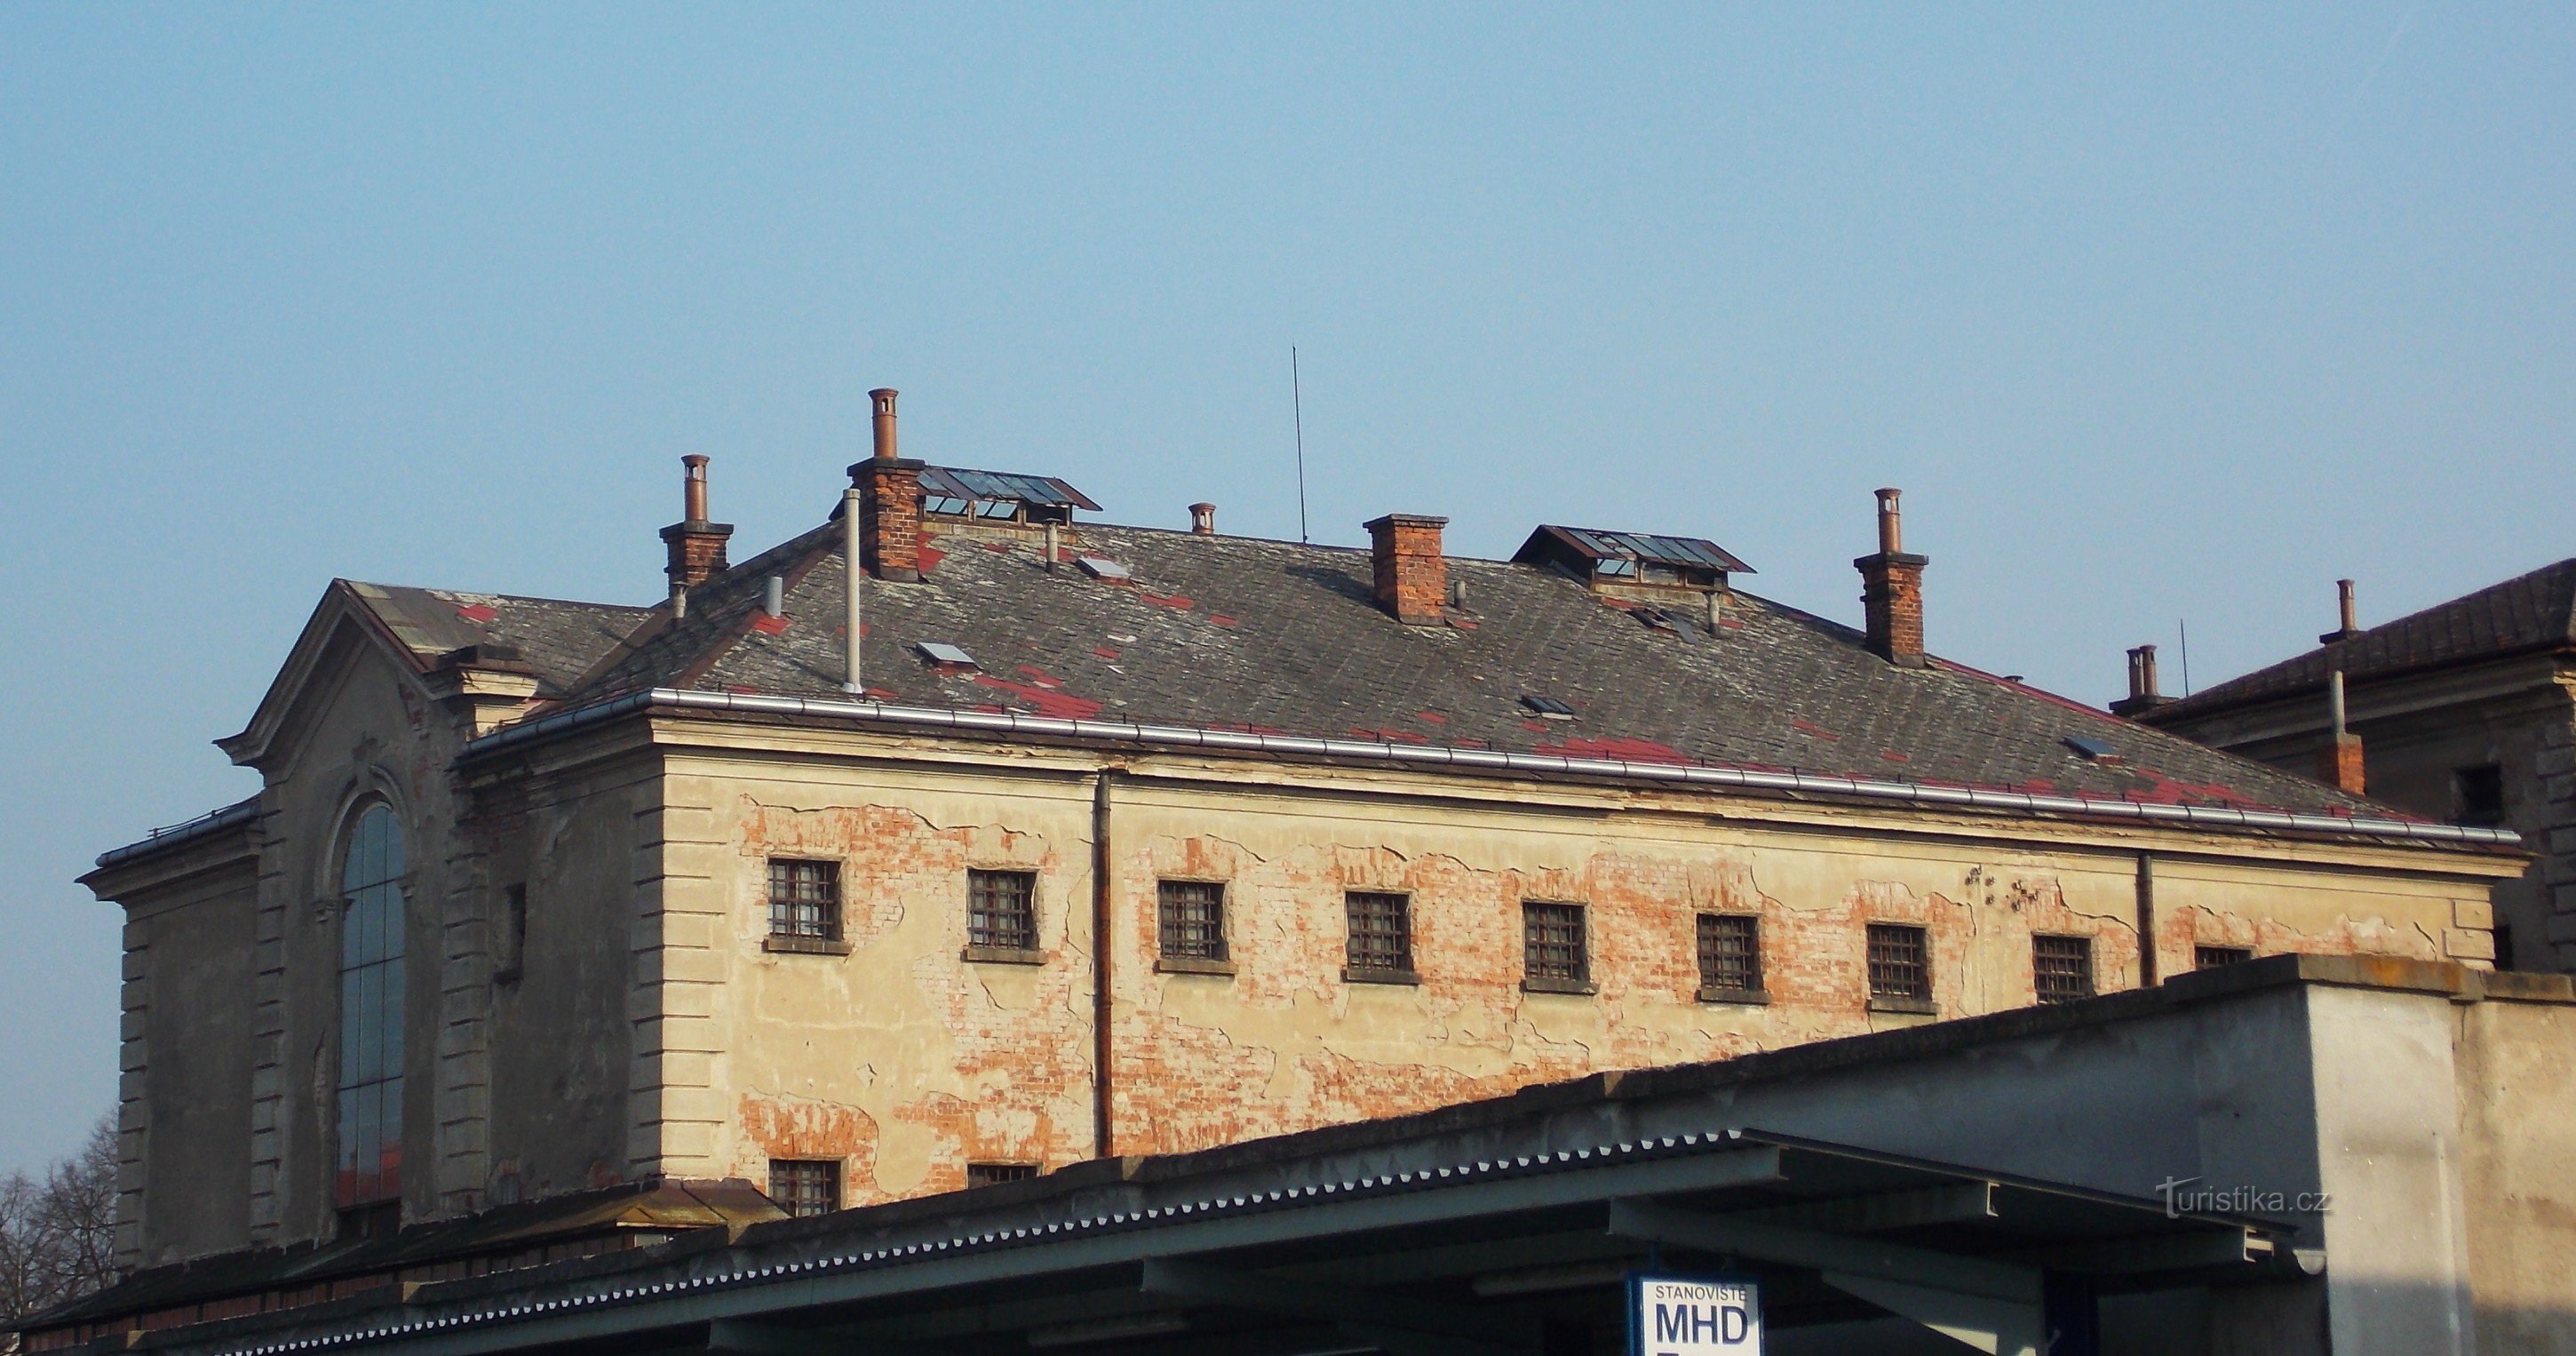 stavba nekdanjega zapora pri železniški postaji ČSAD